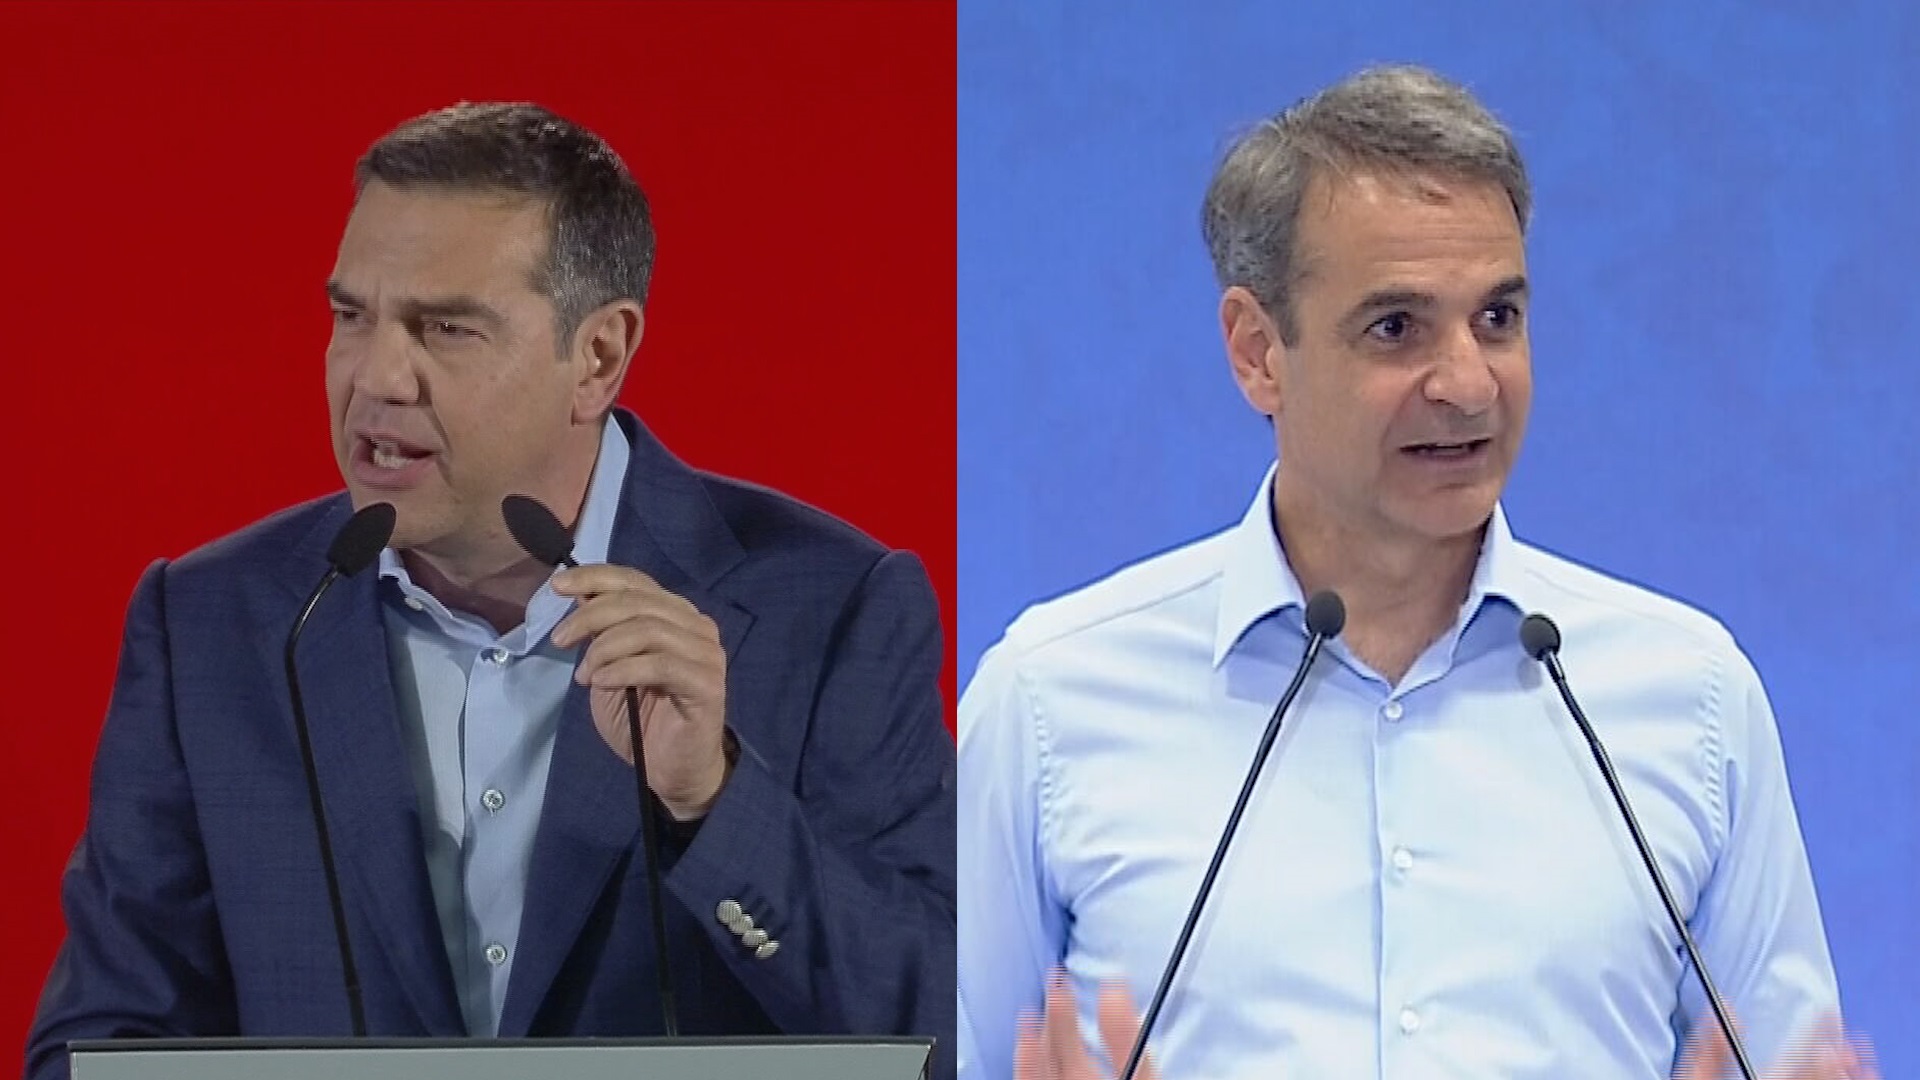 Κ. Μητσοτάκης: Η Ελλάδα έχει ανάγκη από σιγουριά και συνέχεια – Α. Τσίπρας: Ήρθε η ώρα της αλλαγής, θα νικήσουμε